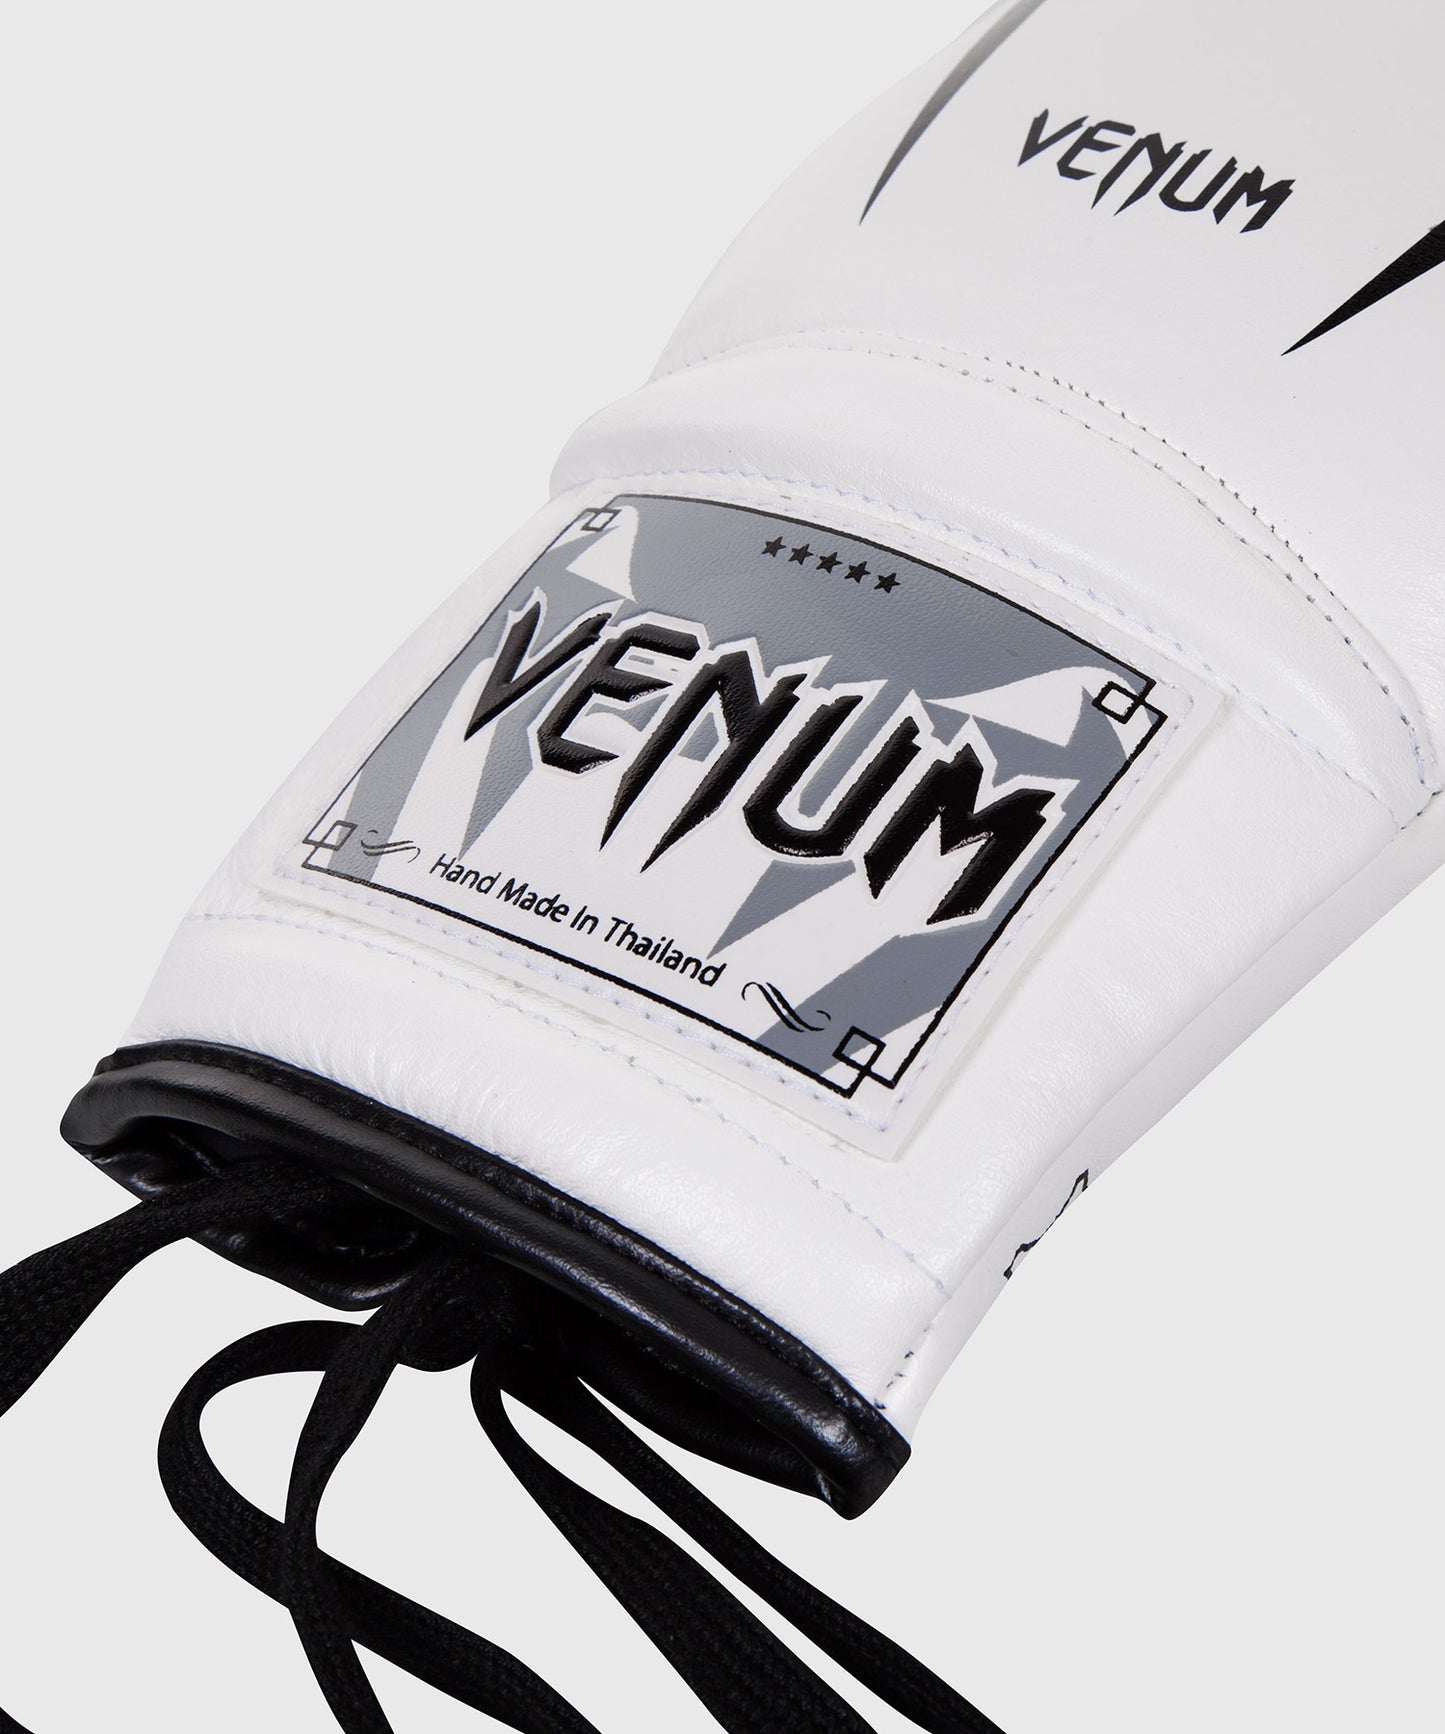 Venum Giant 3.0 Boxhandschuhe - Nappaleder - Mit Schnürung - Weiß